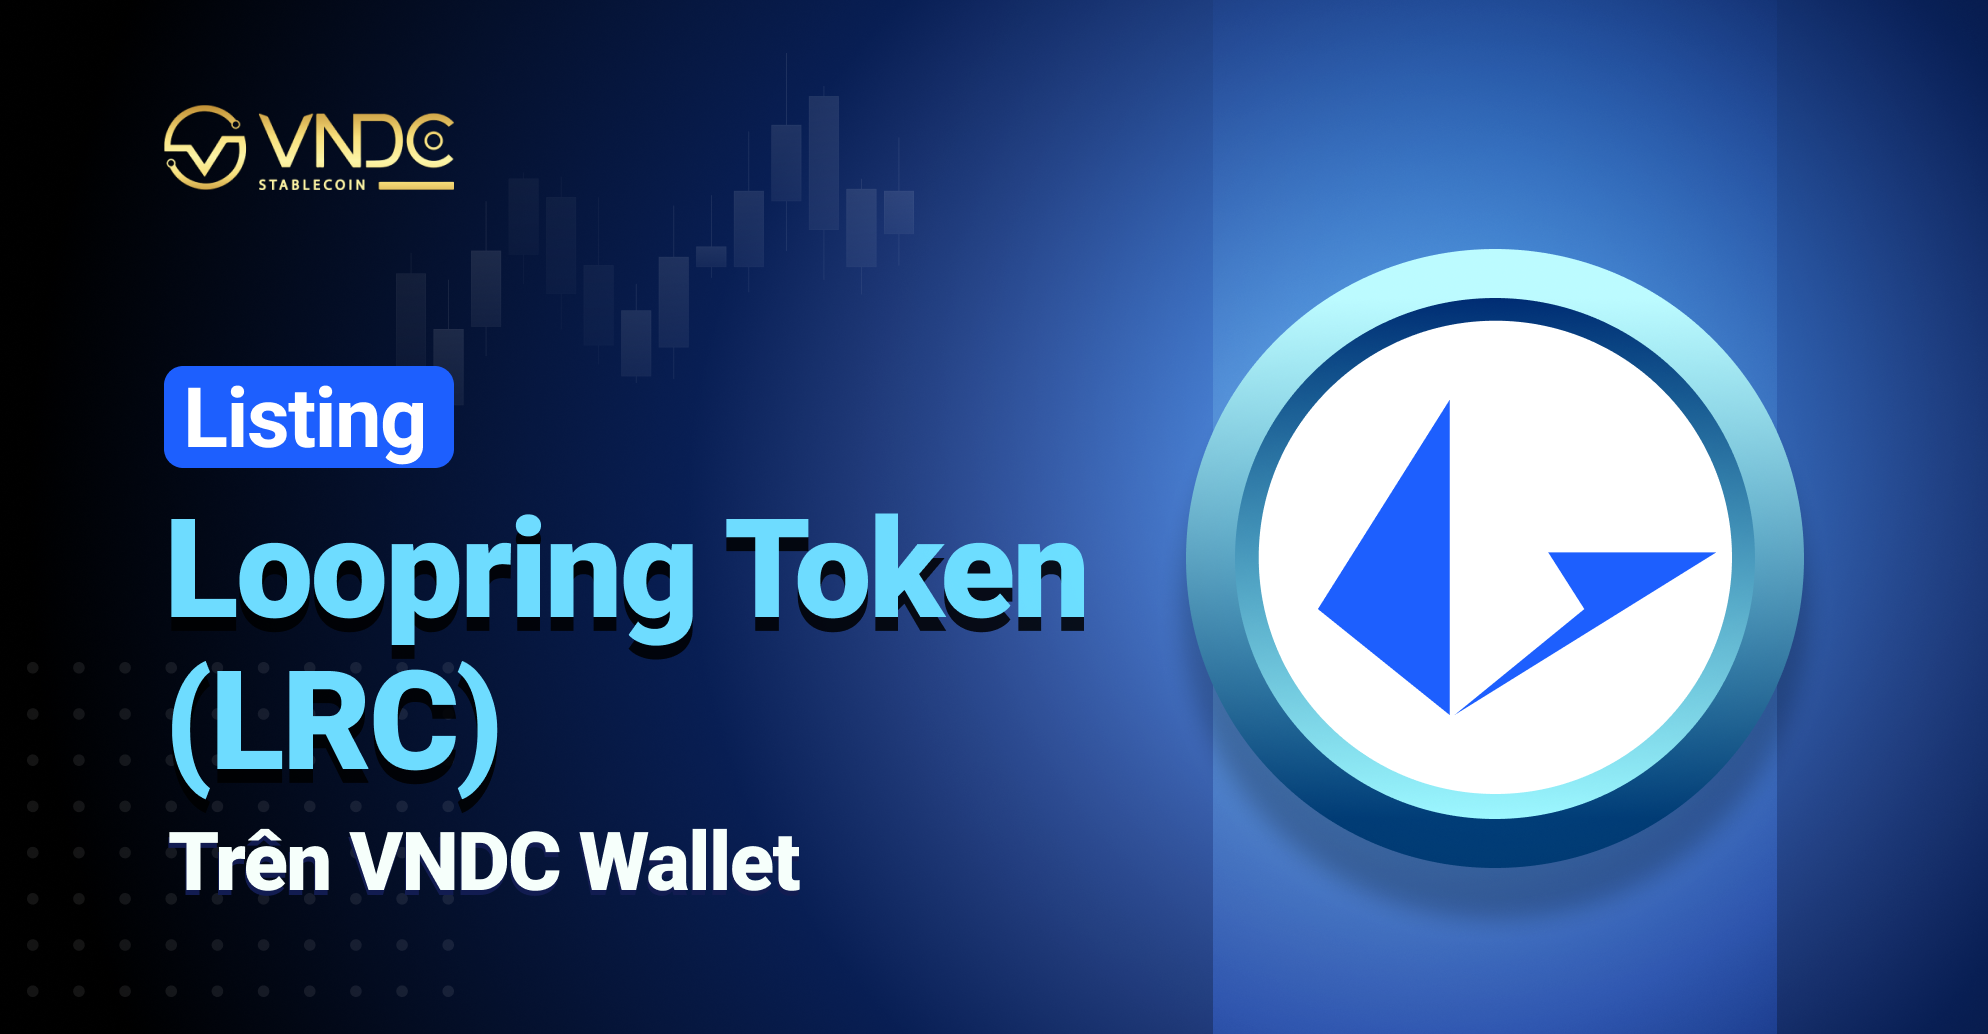 Listing Loopring Token (LRC) on VNDC Wallet